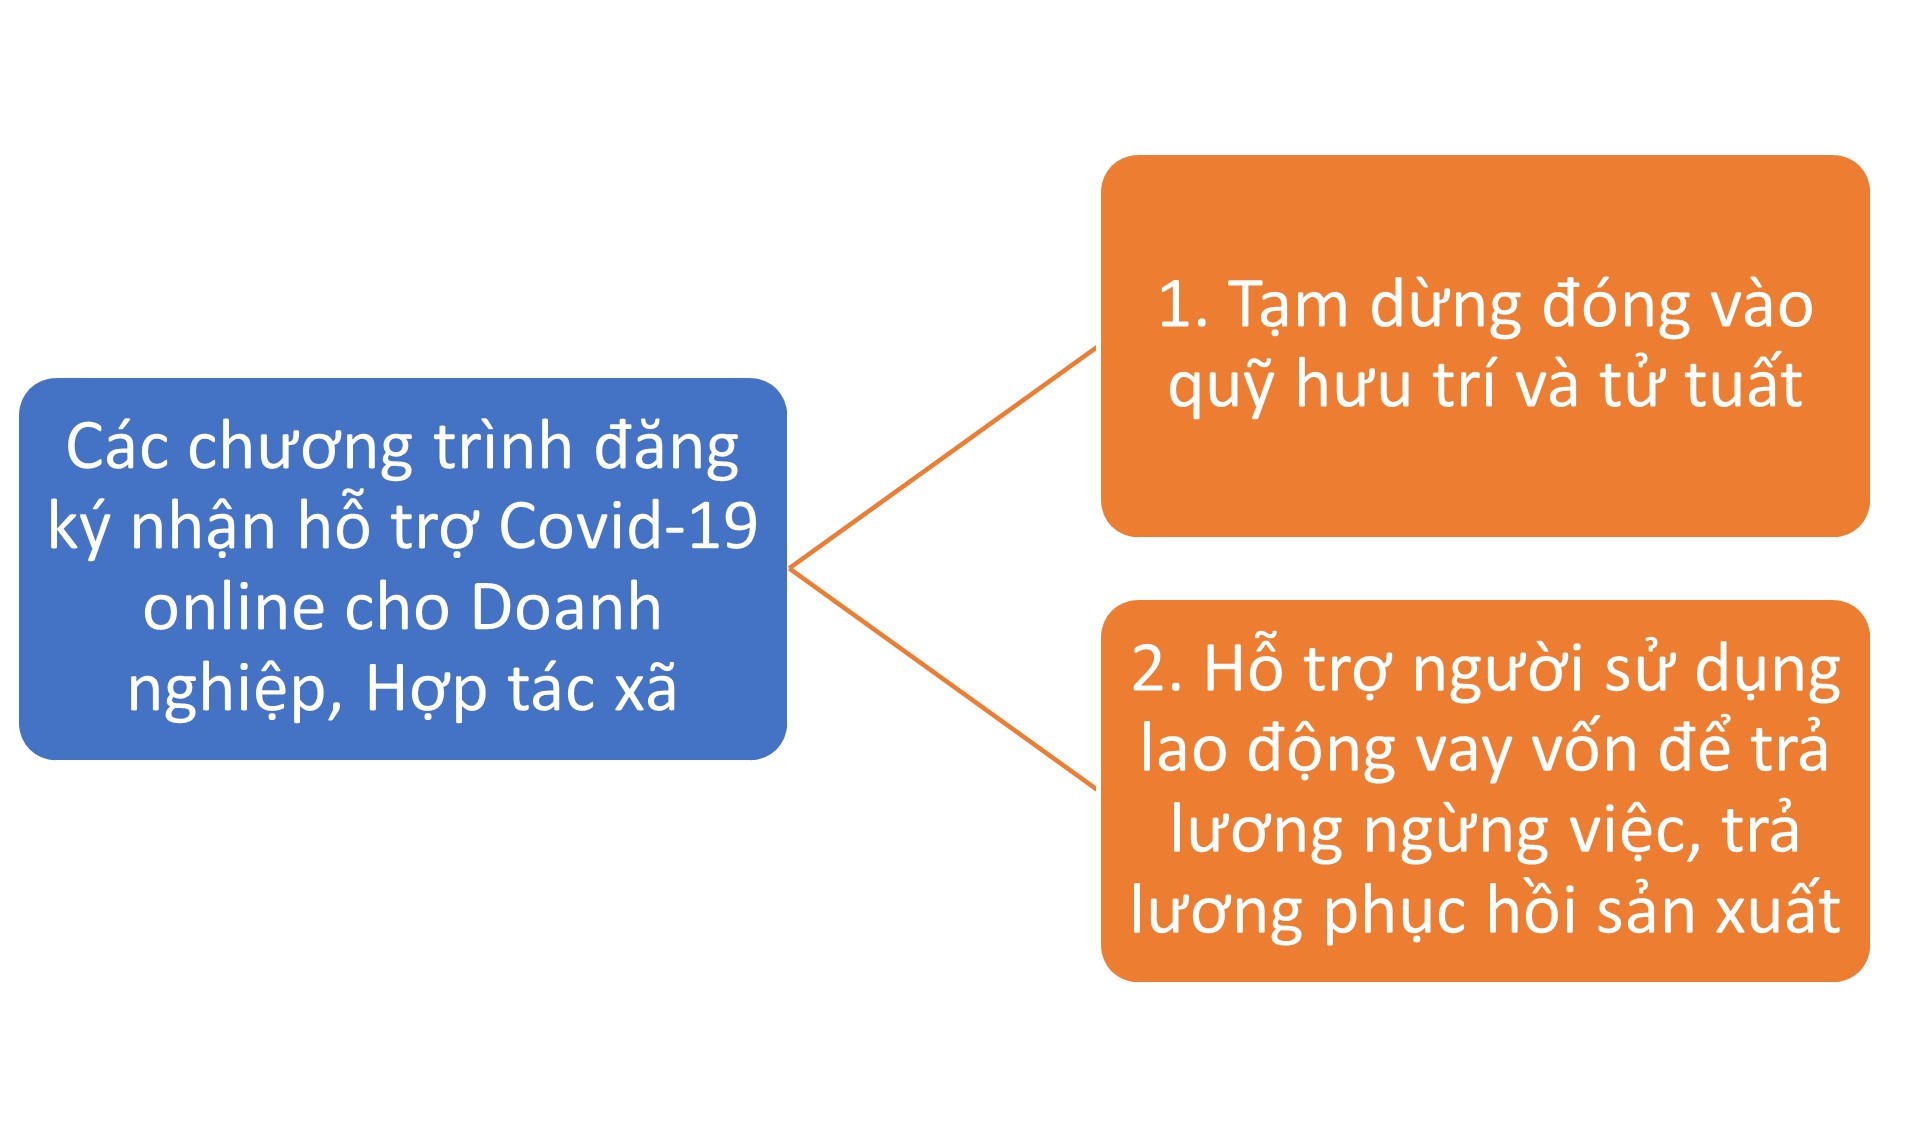 Hình 1: Các chương trình đăng ký nhận hỗ trợ covid-19 online cho Doanh nghiệp, Hợp tác xã